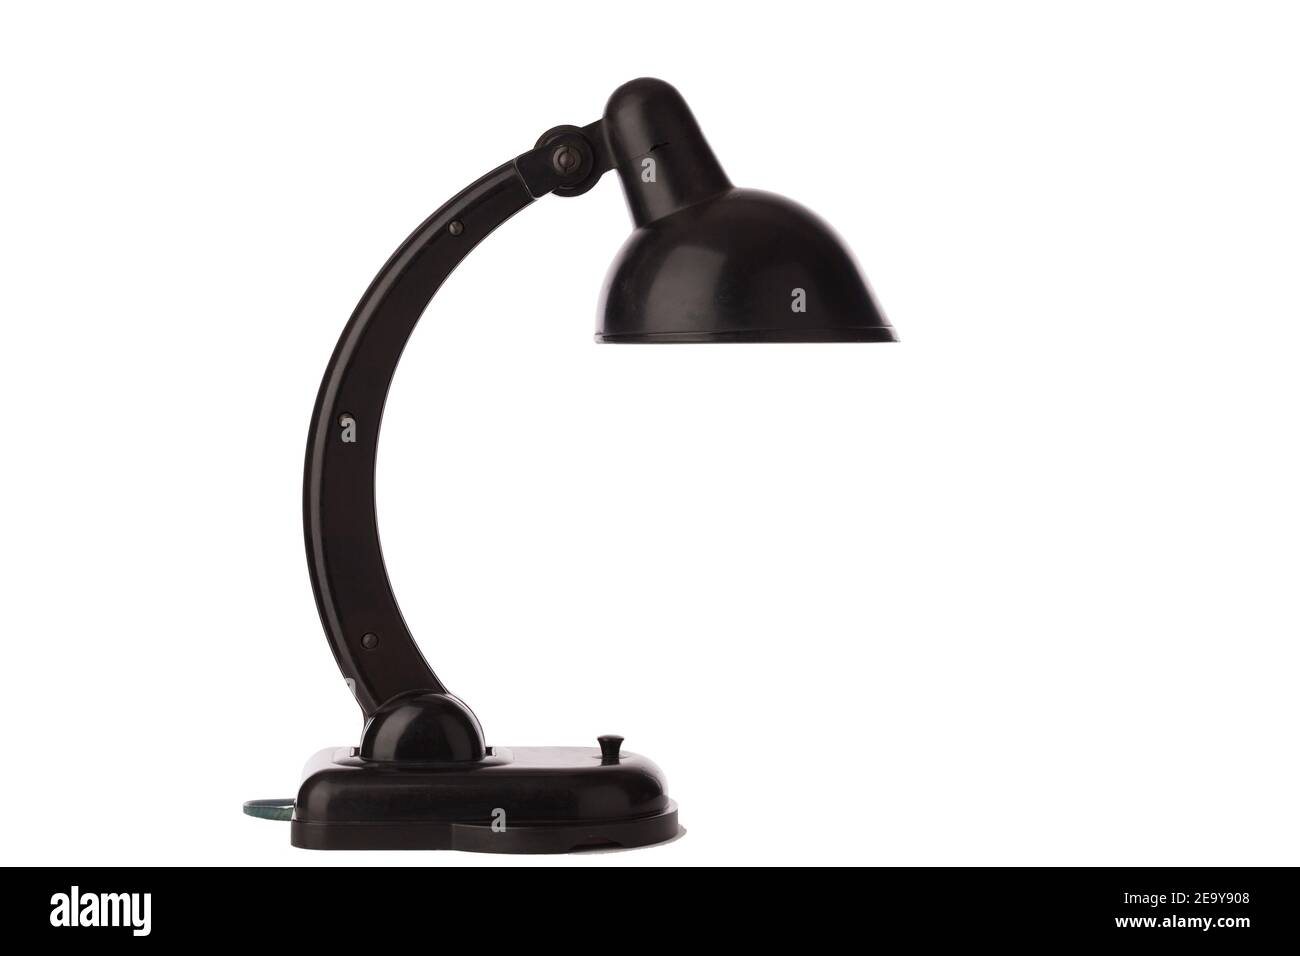 La lampada da tavolo nera è di stile vintage. È isolato su uno sfondo bianco. Foto Stock